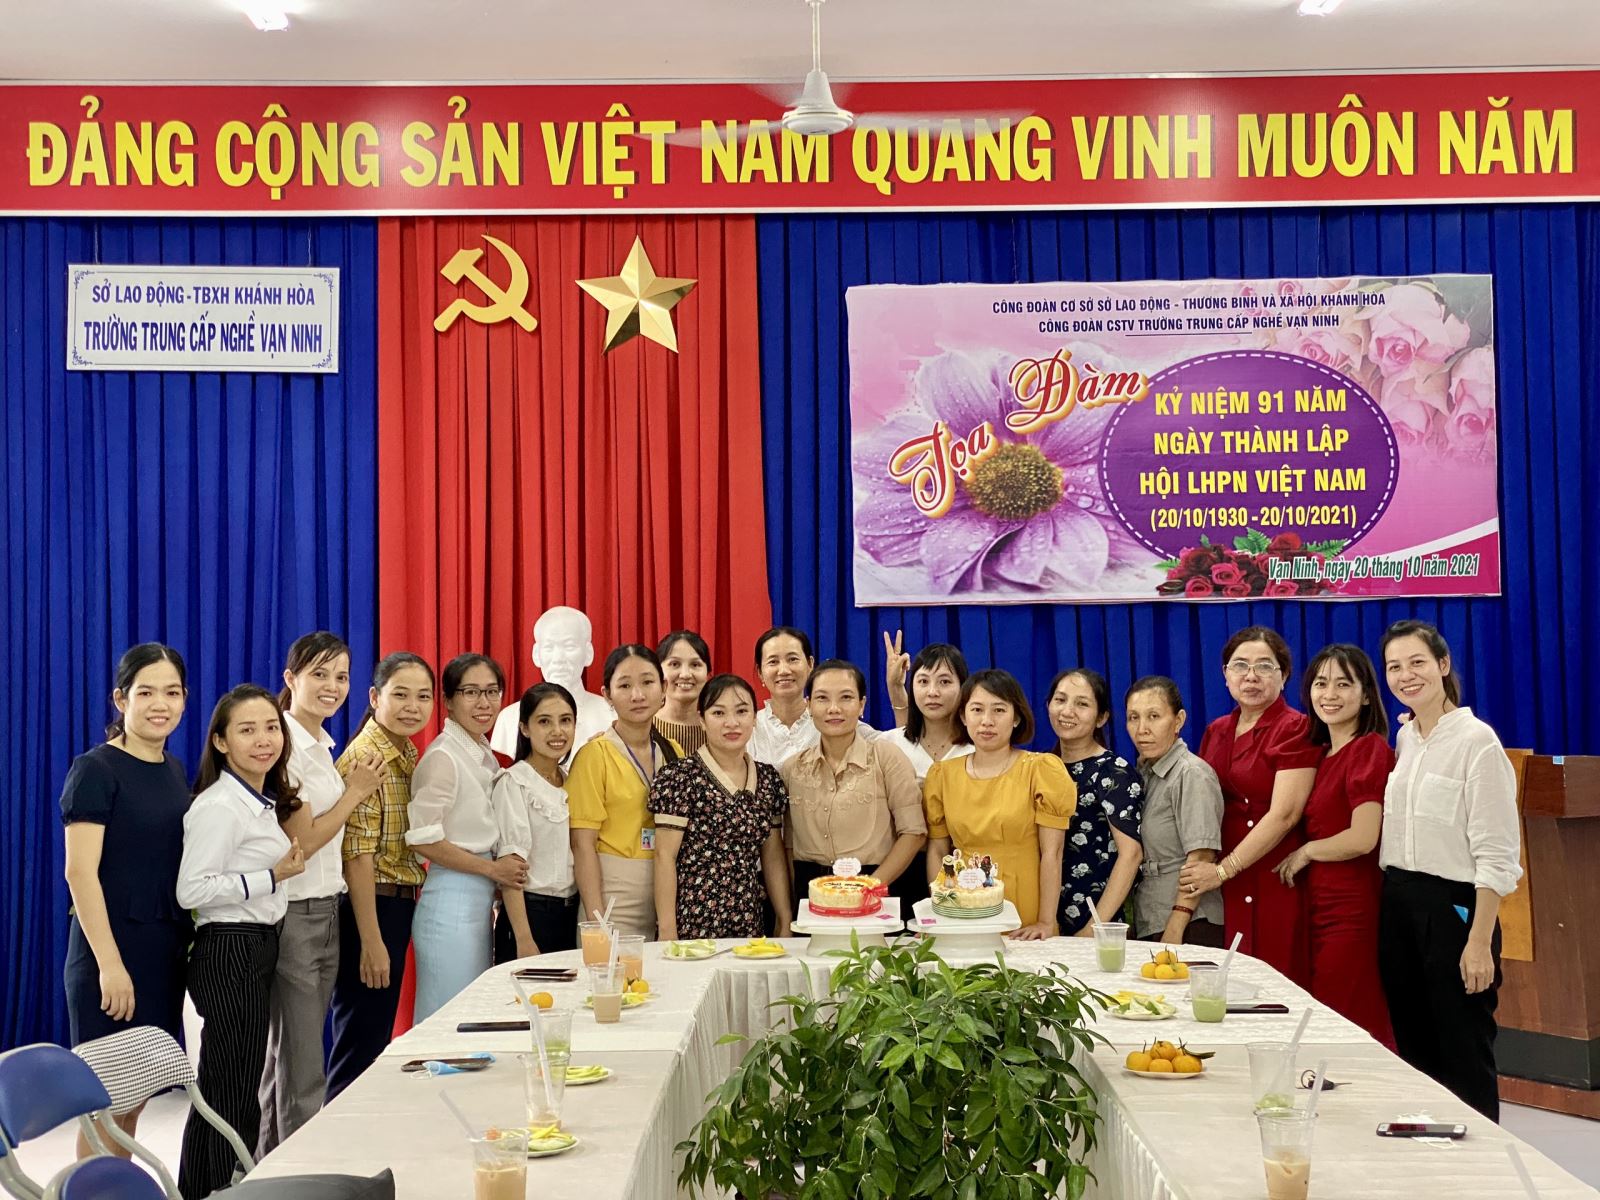 Tọa đàm kỷ niệm 91 năm thành lập hội liên hiệp phụ nữ Việt Nam (20/10/1930 - 20/10/2021)